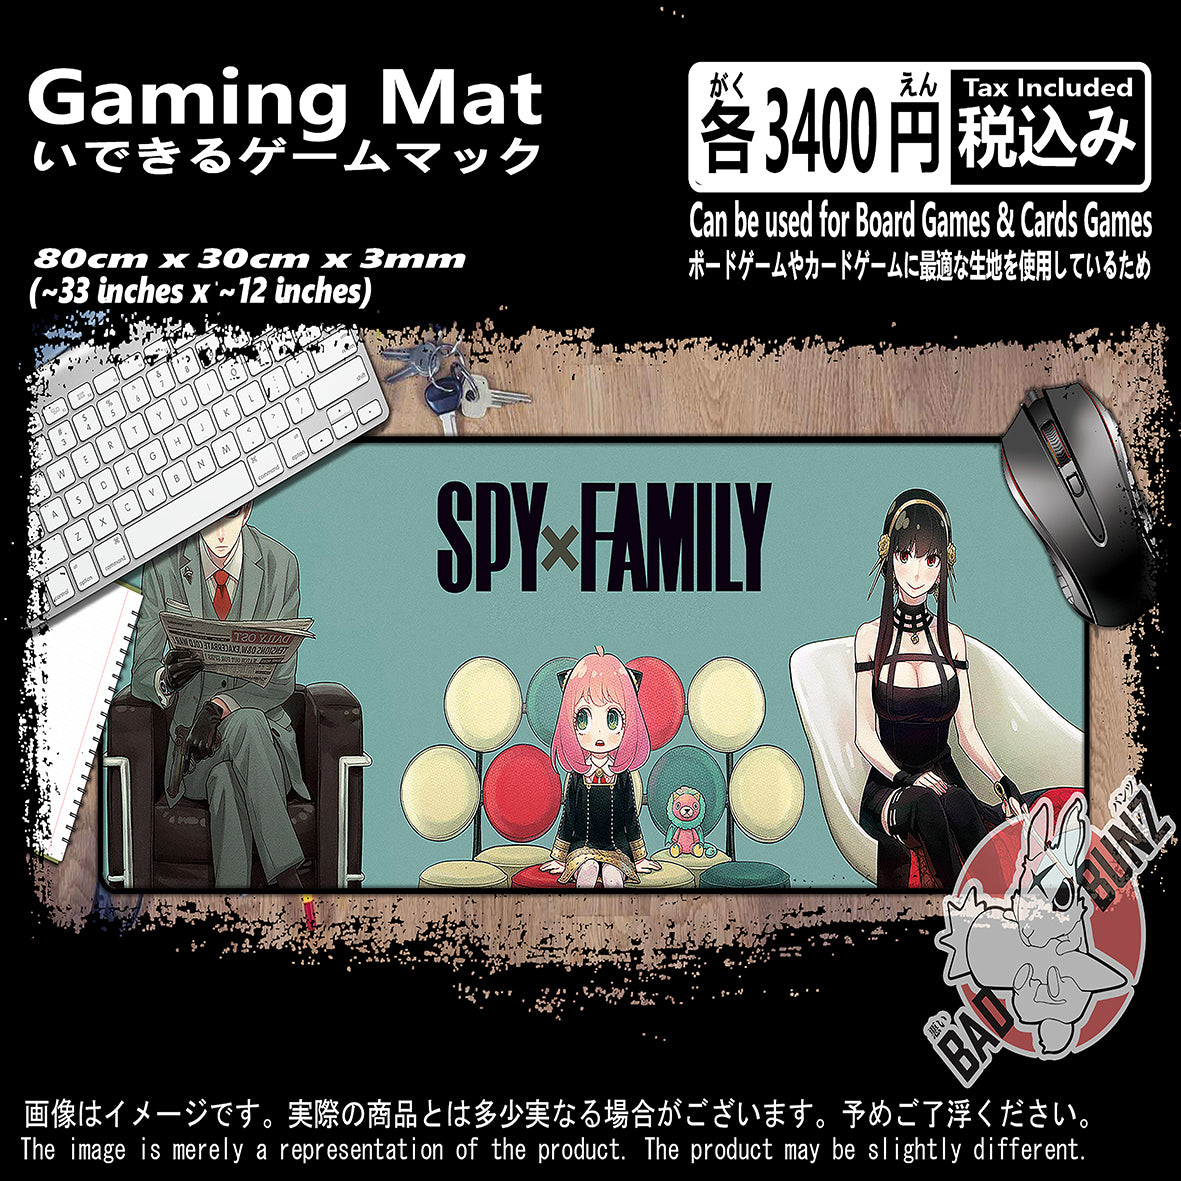 (AN-SPY-04) Spy X Family Anime 800mm x 300mm Gaming Play Mat